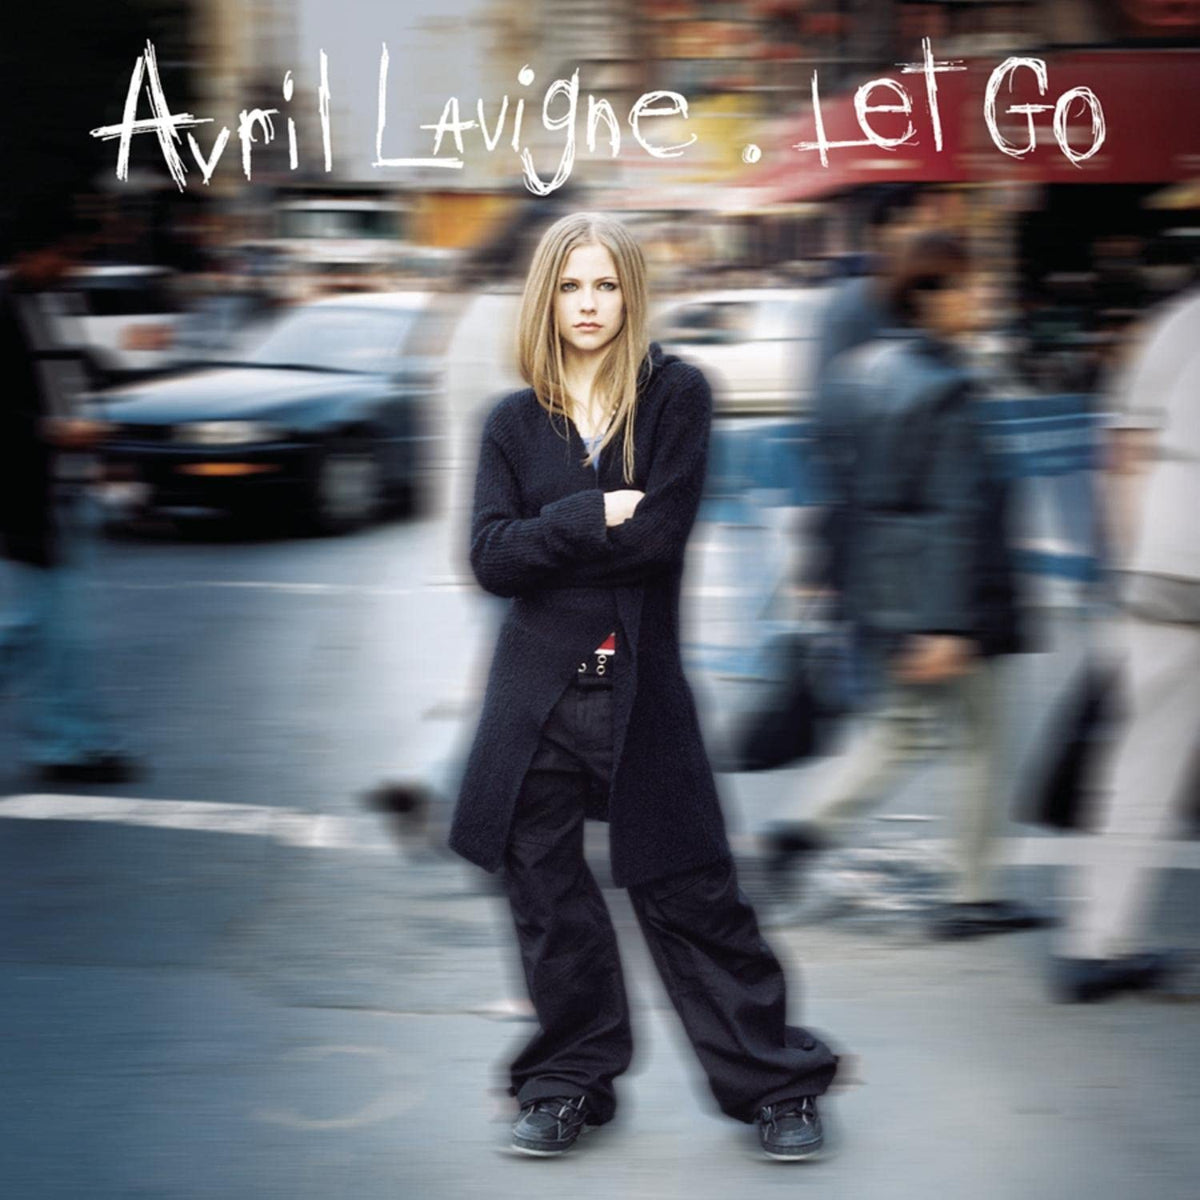 Avril Lavigne - Let Go (LP)